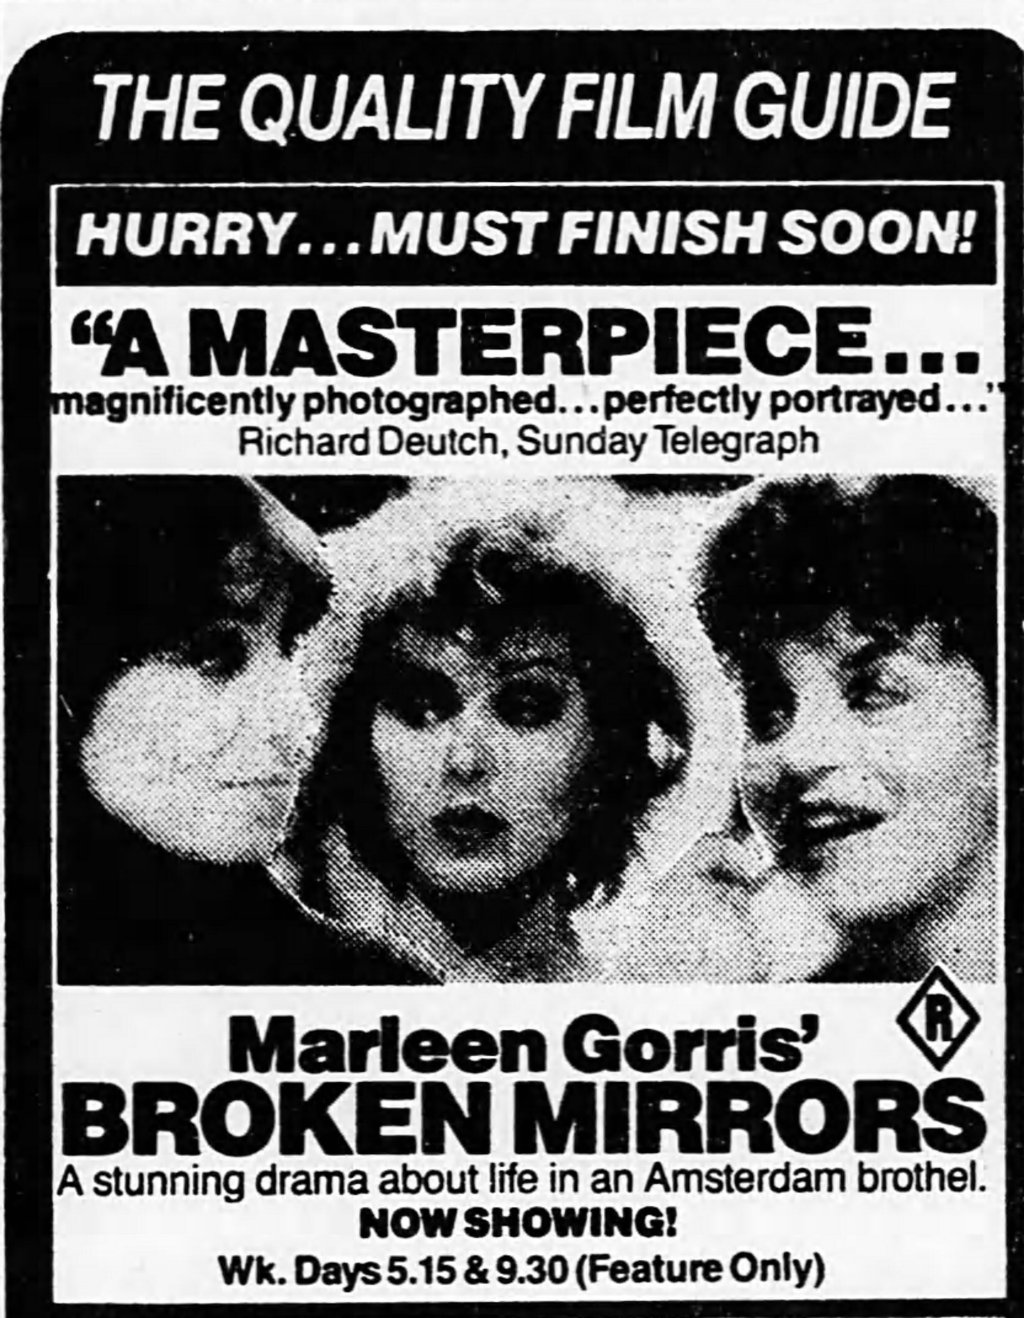 The Evil That Men Do: Marleen Gorris’ BROKEN MIRRORS (1984)